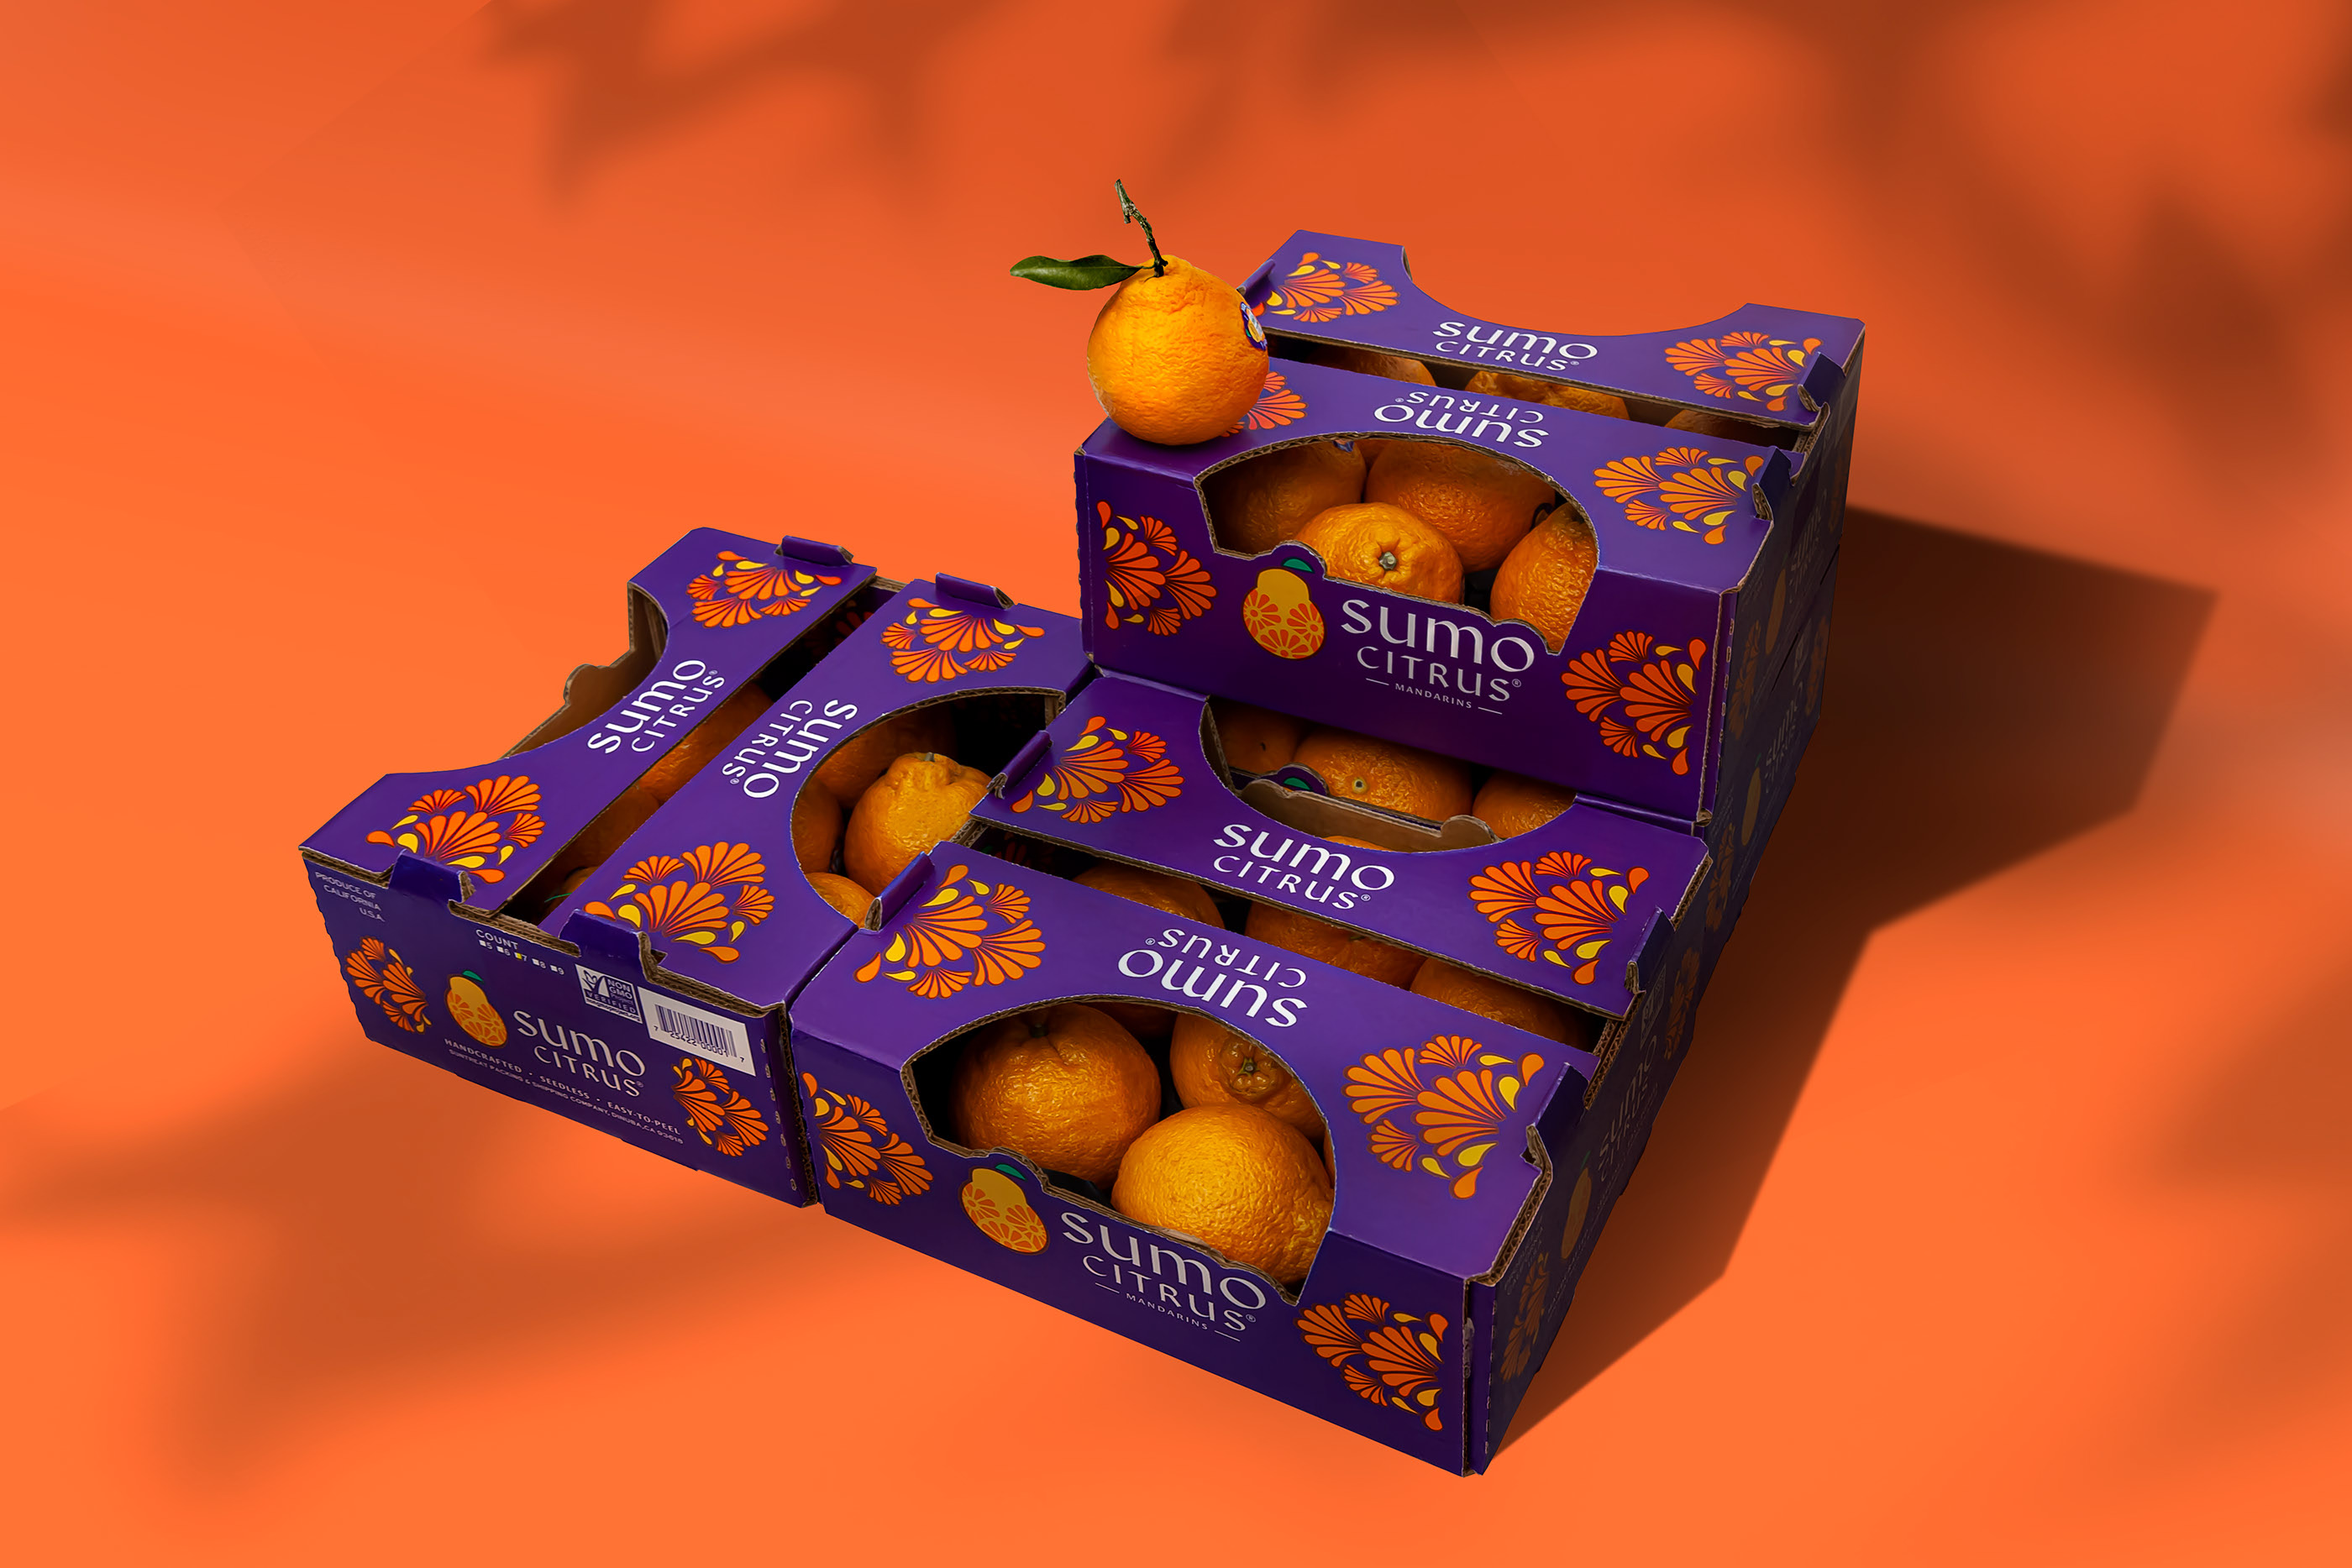 外国柑橘包装设计 柑橘包装设计哪家好 柑橘包装设计公司 第5张